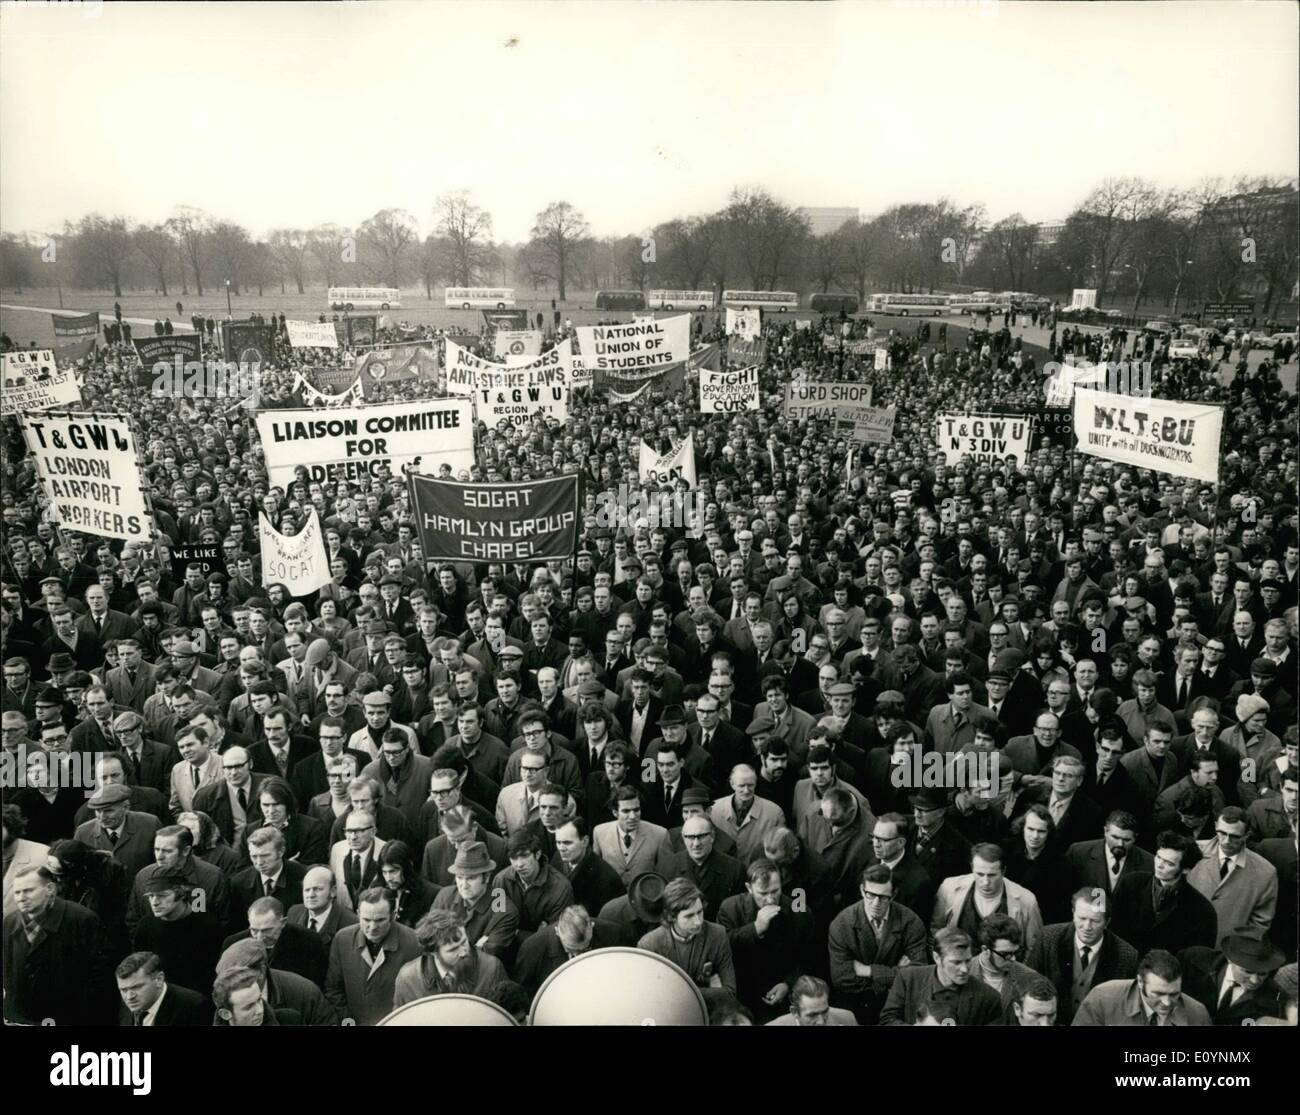 Il 12 Dic. 1970 - Un giorno di sciopero contro le relazioni industriali Bill. migliaia di lavoratori sono stati che prendono parte a quest' oggi un giorno di sciopero contro le relazioni industriali di bill. Vi è stato un marzo da tower hill a Londra, agli altoparlanti, ad angolo di Hyde park, dove si è svolta una riunione dopo che essi sono andati alla House of Commons alla lobby MP. foto mostra una vista generale durante la riunione odierna in Hyde park. Foto Stock